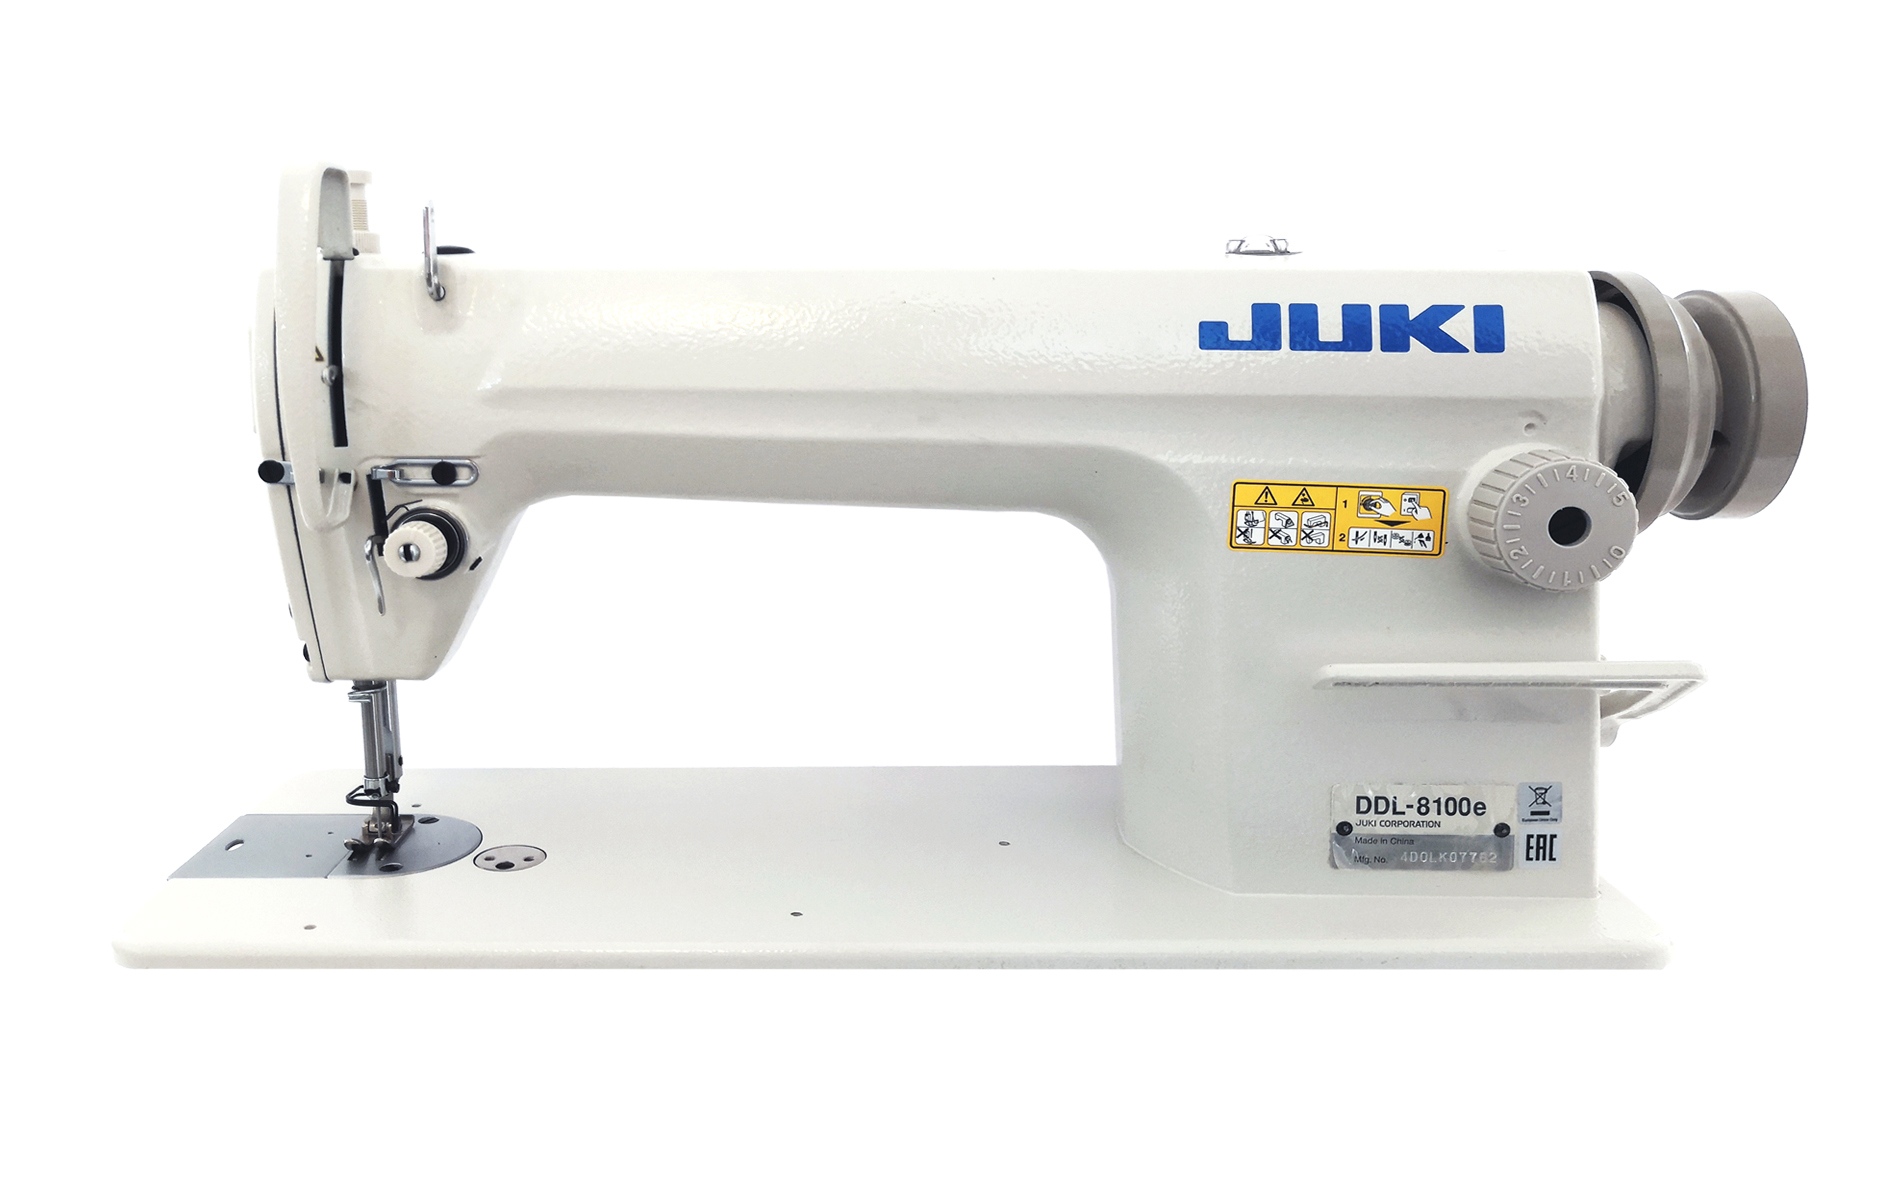 прямострочная промышленная швейная машина juki ddl-8100eh (голова)